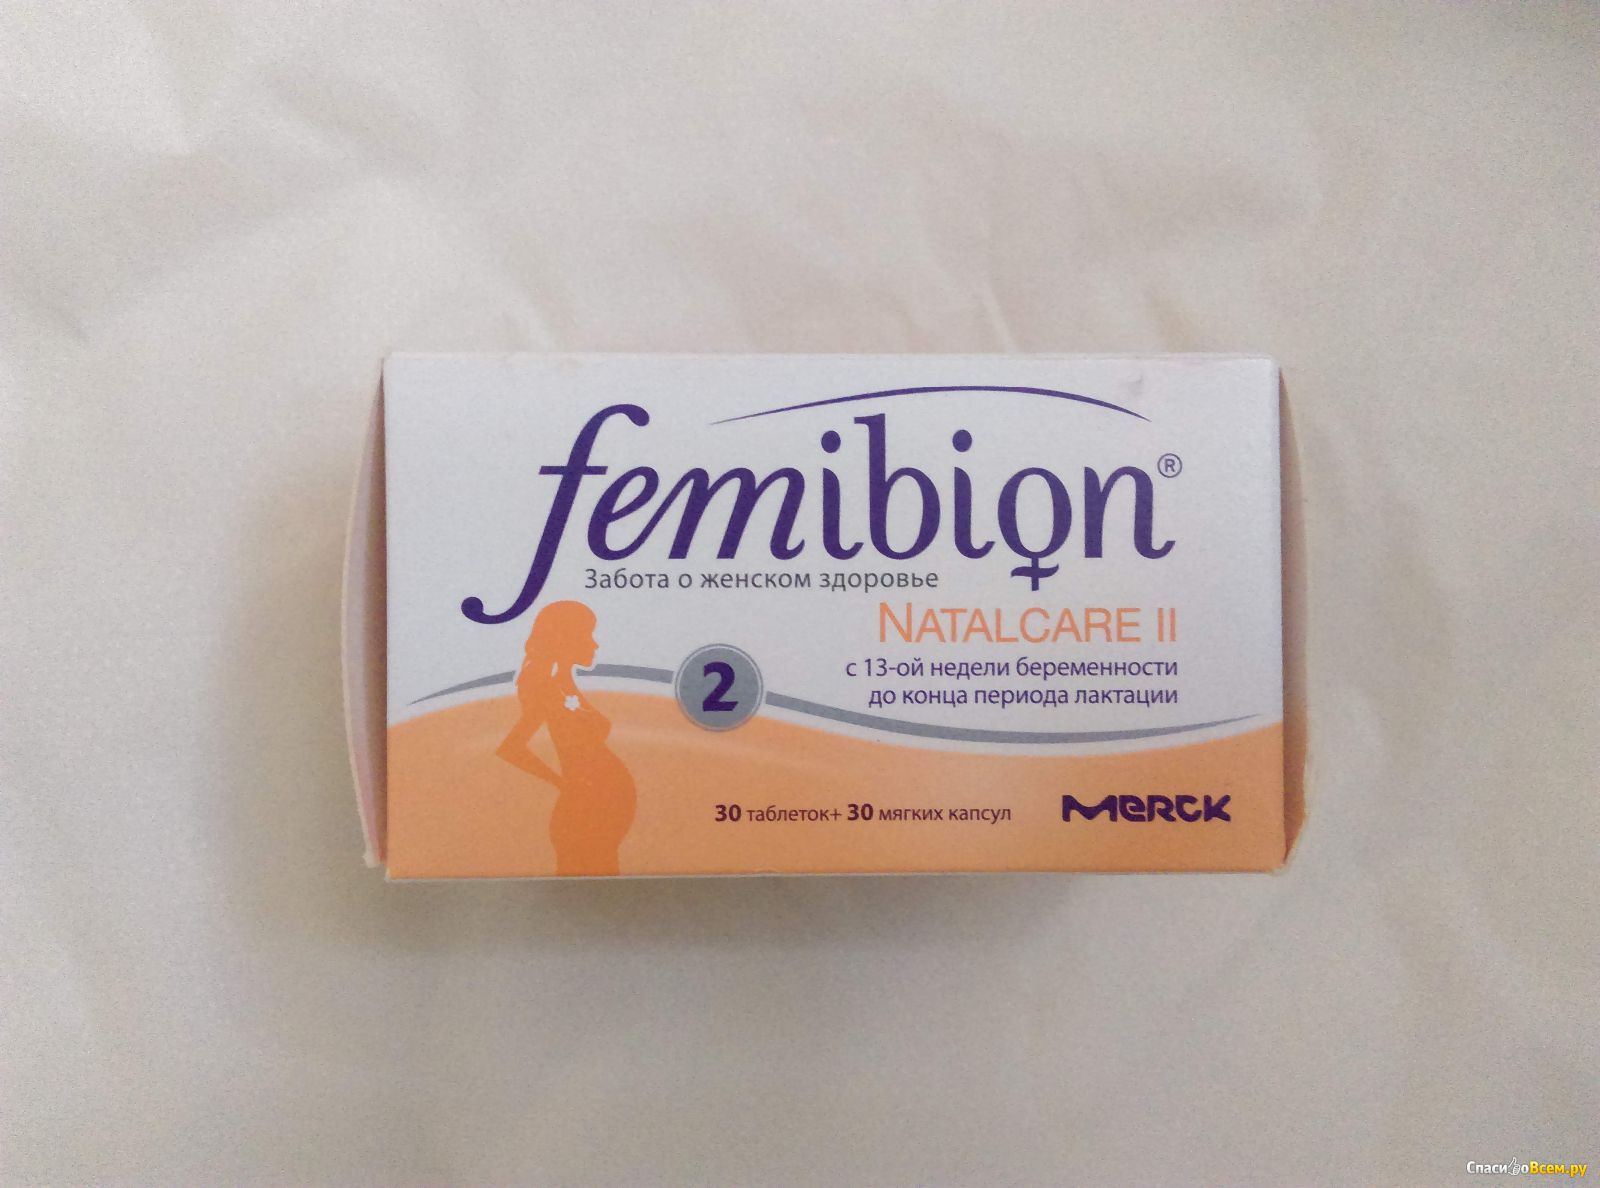 Femibion natalcare 2. Фемибион наталкеа 2 таб + капсулы n30. Фемибион с 13 недели беременности.